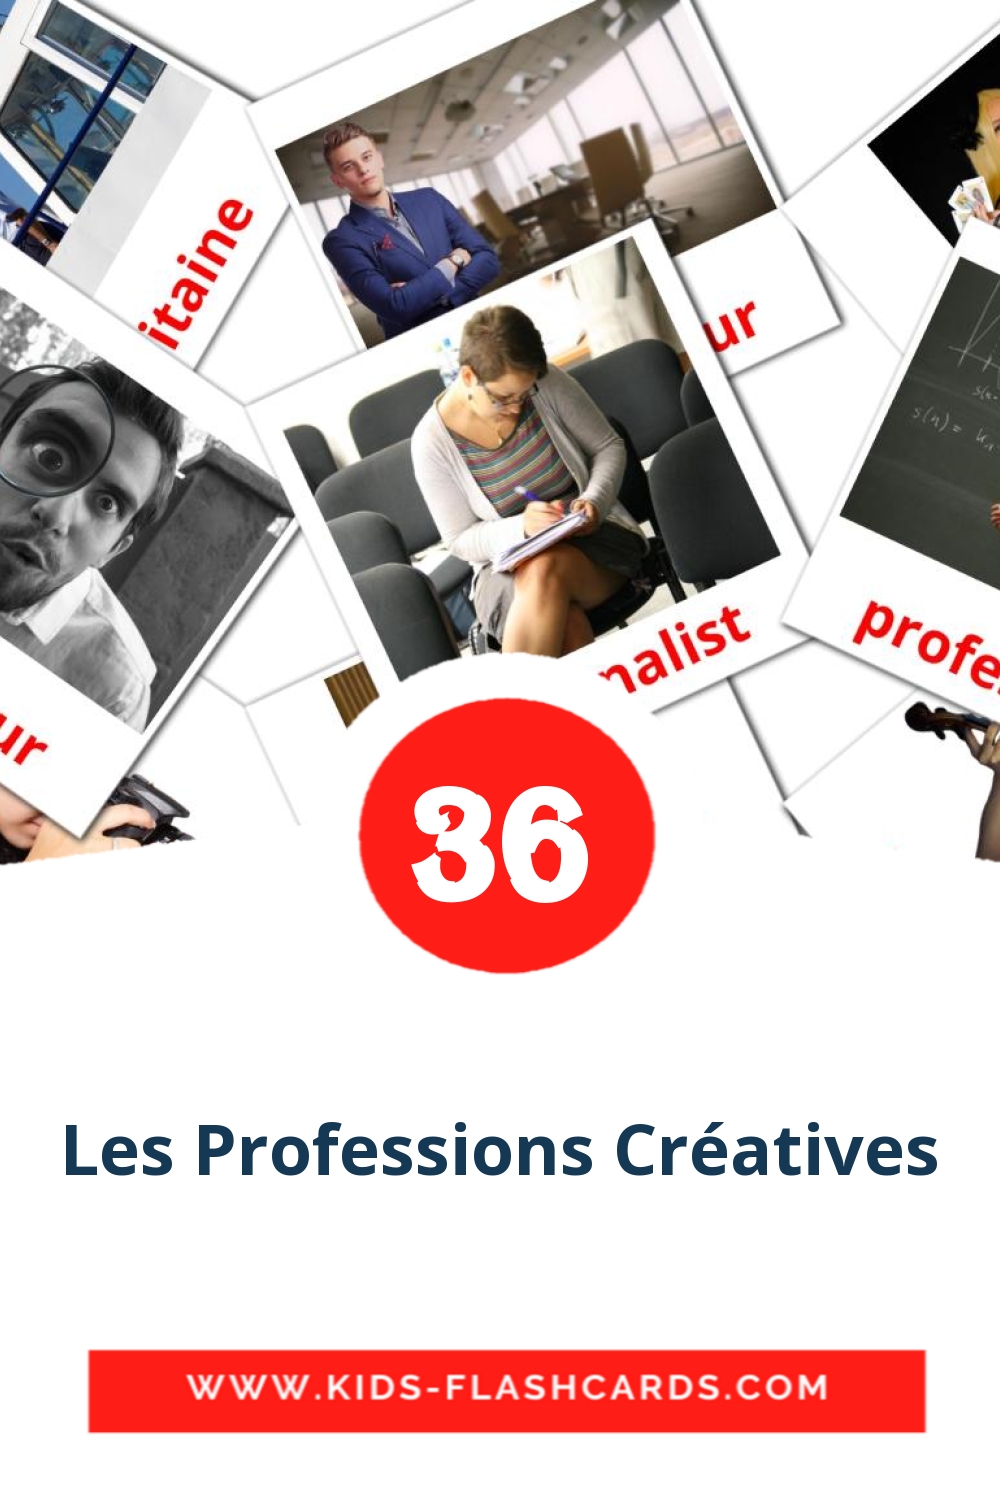 Les Professions Créatives на французском для Детского Сада (36 карточек)